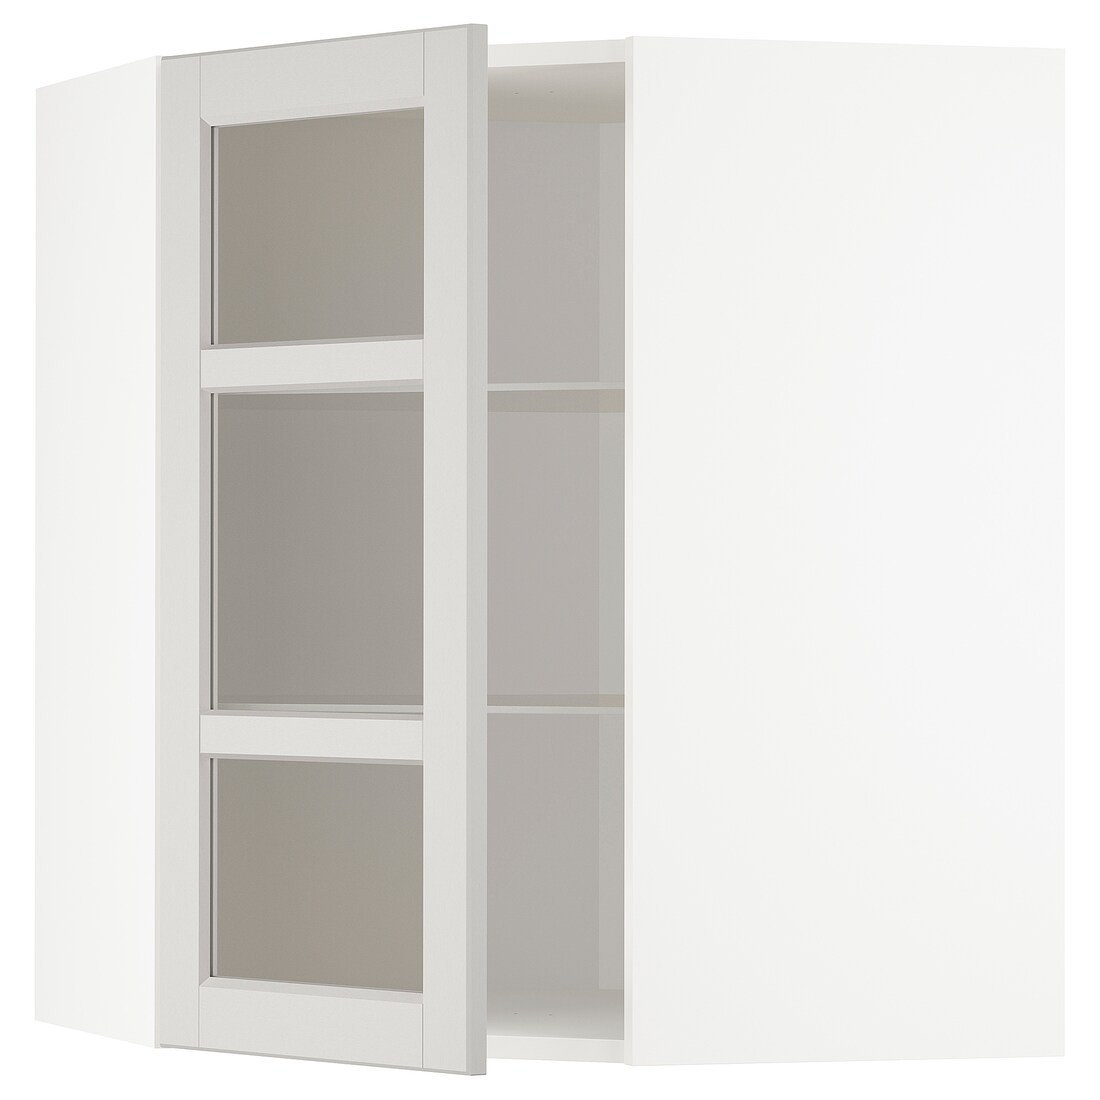 METOD МЕТОД Кутова настінна шафа з полицями / скляні двері, білий / Lerhyttan світло-сірий, 68x80 см